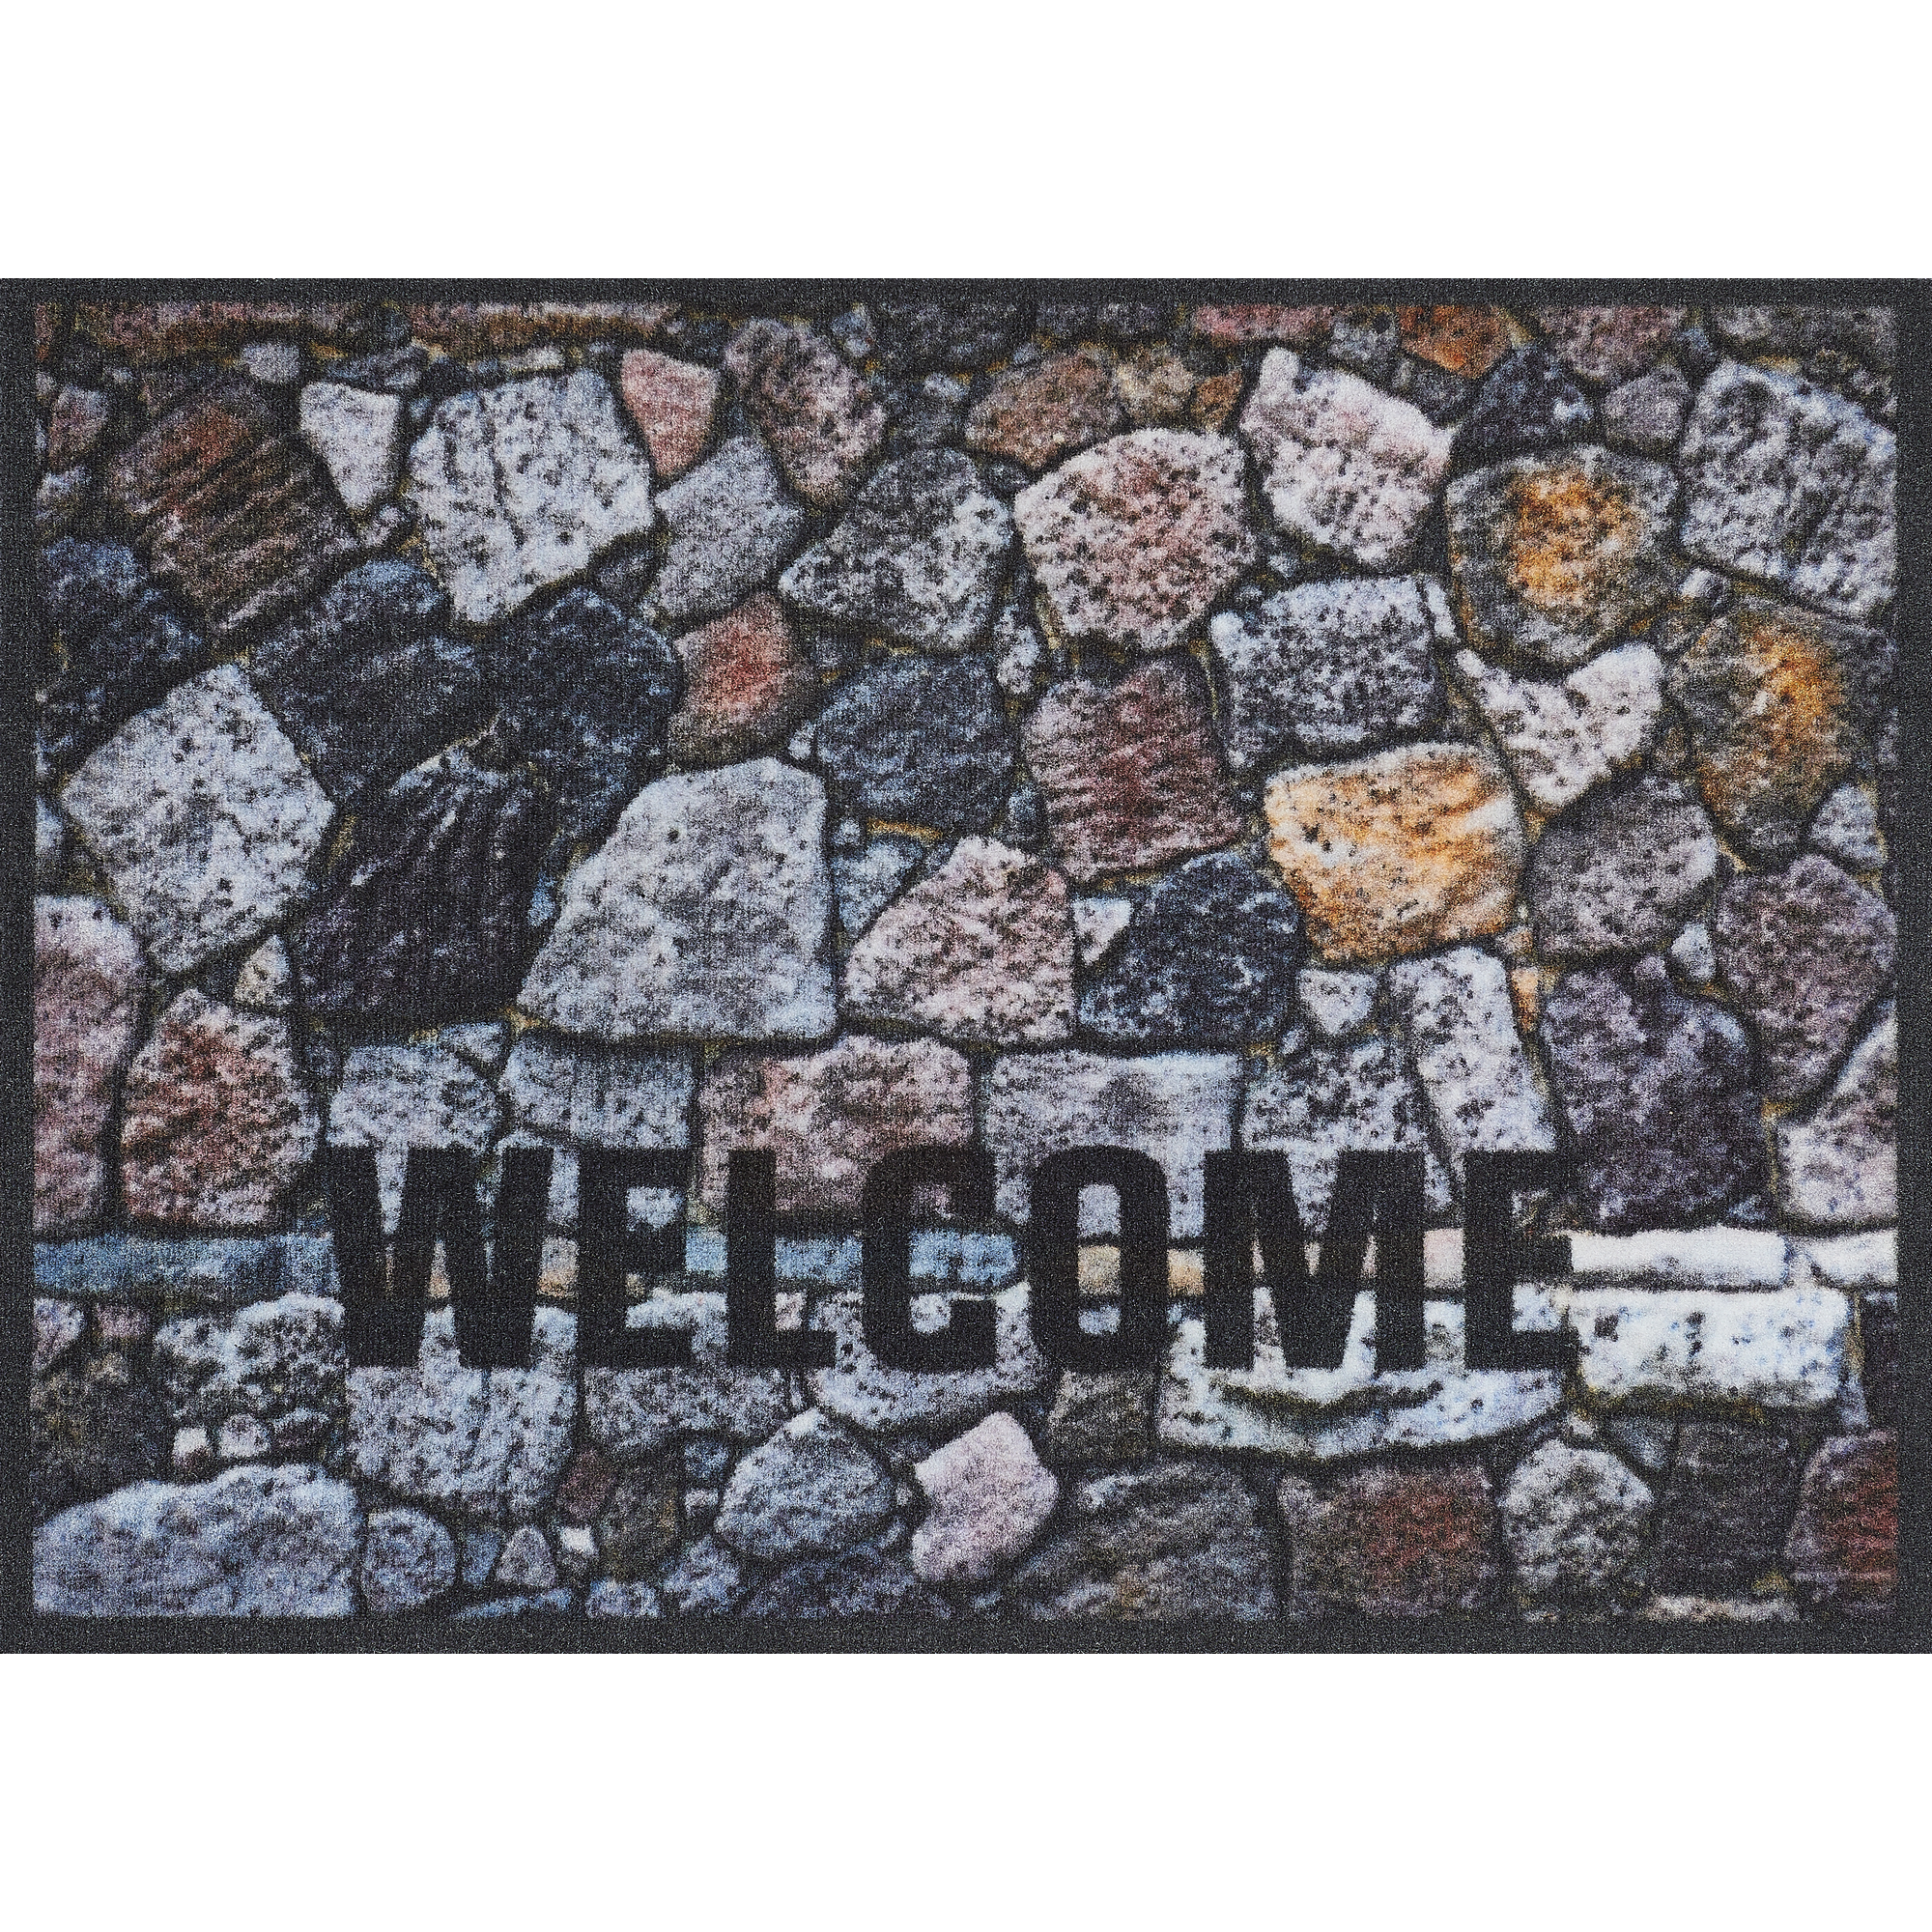 Schmutzfangmatte 'Welcome Steine' mehrfarbig 50 x 70 cm + product picture